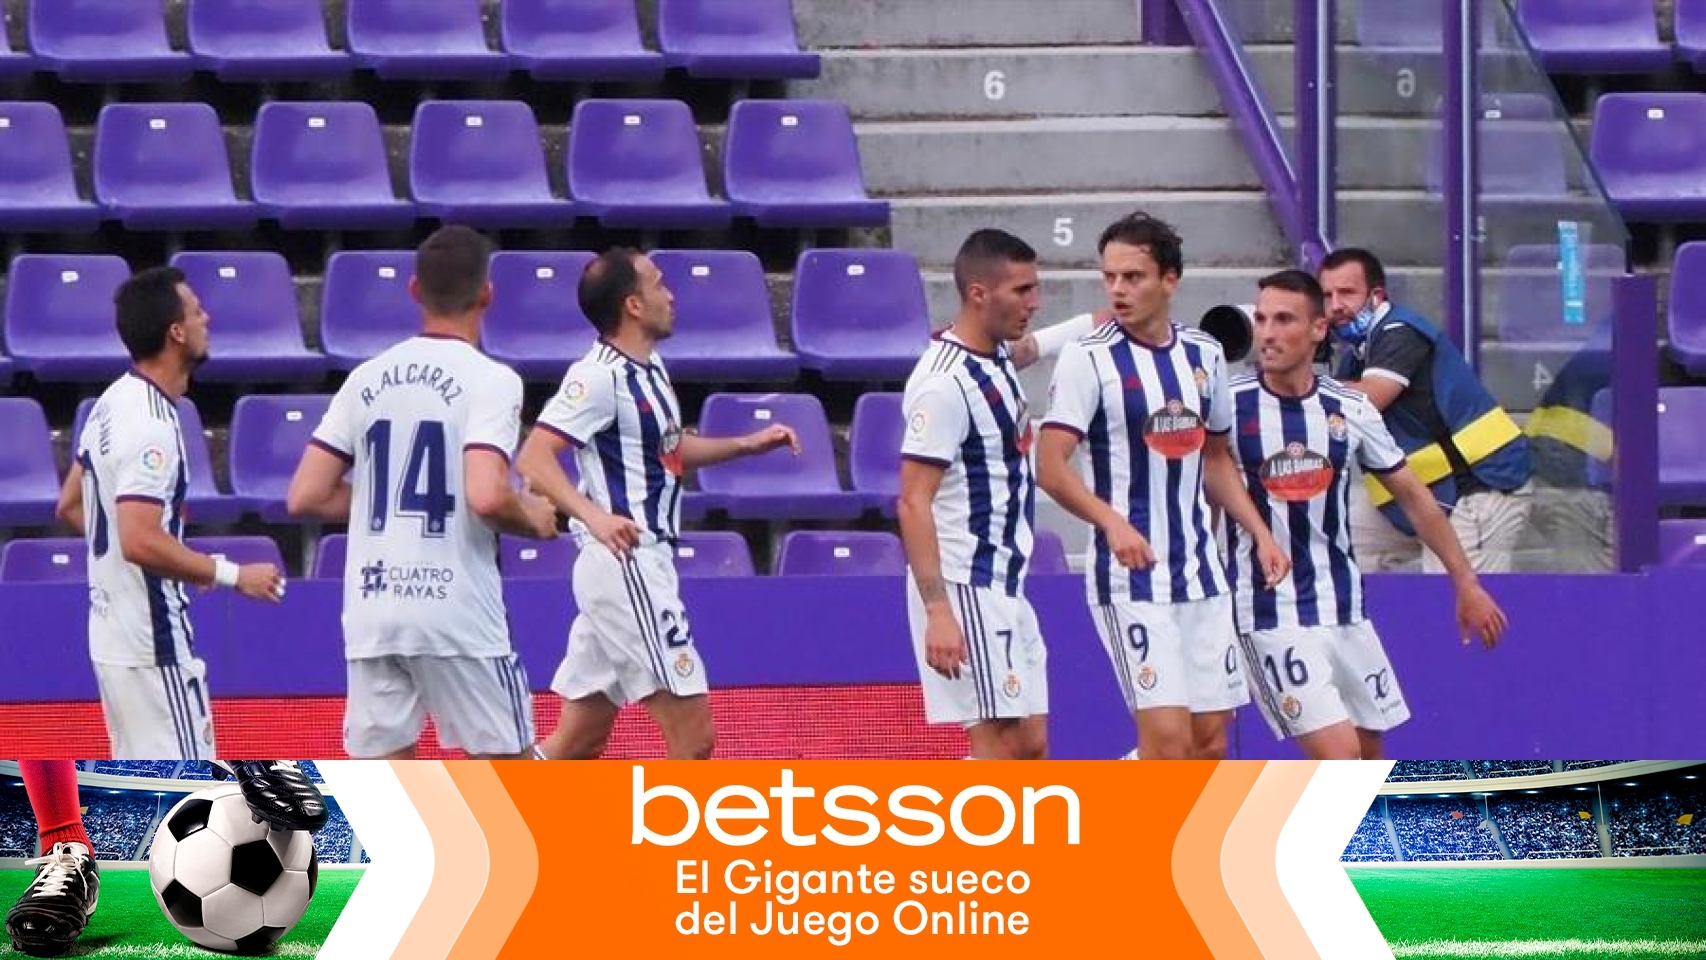 Piña de los jugadores del Valladolid para celebrar el gol en La Liga